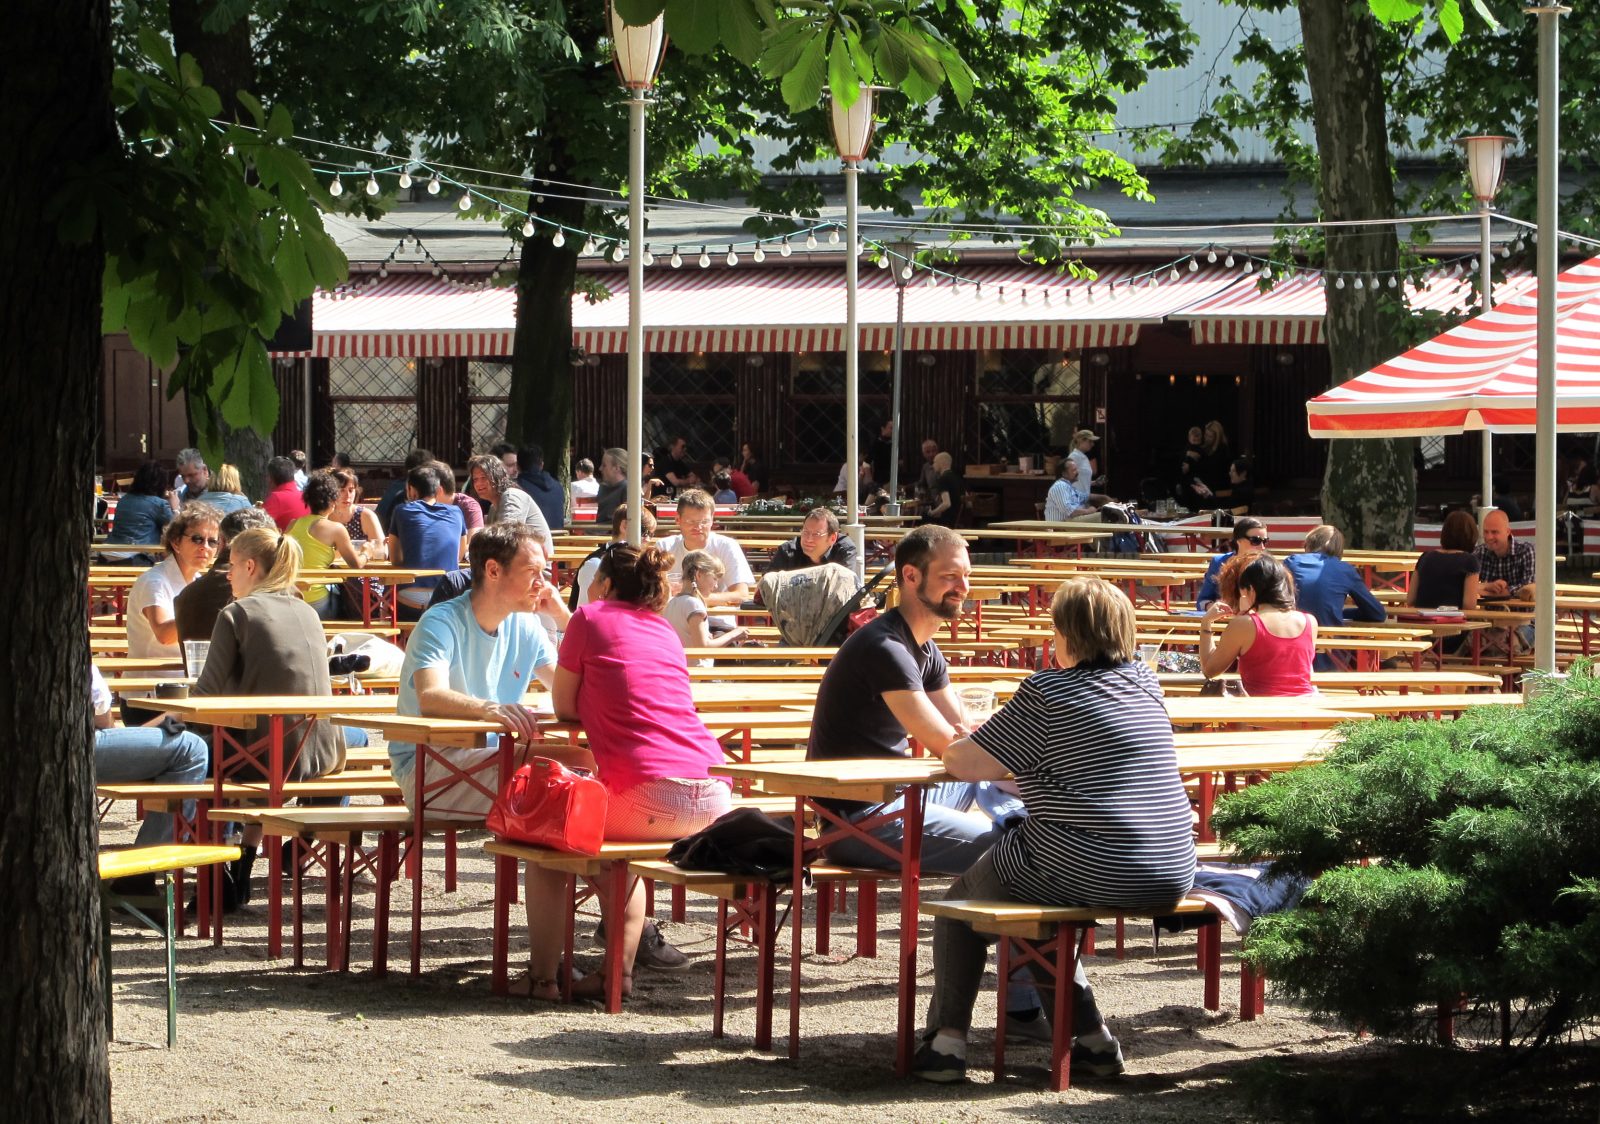 Prost The 15 Best Beer Gardens In Berlin